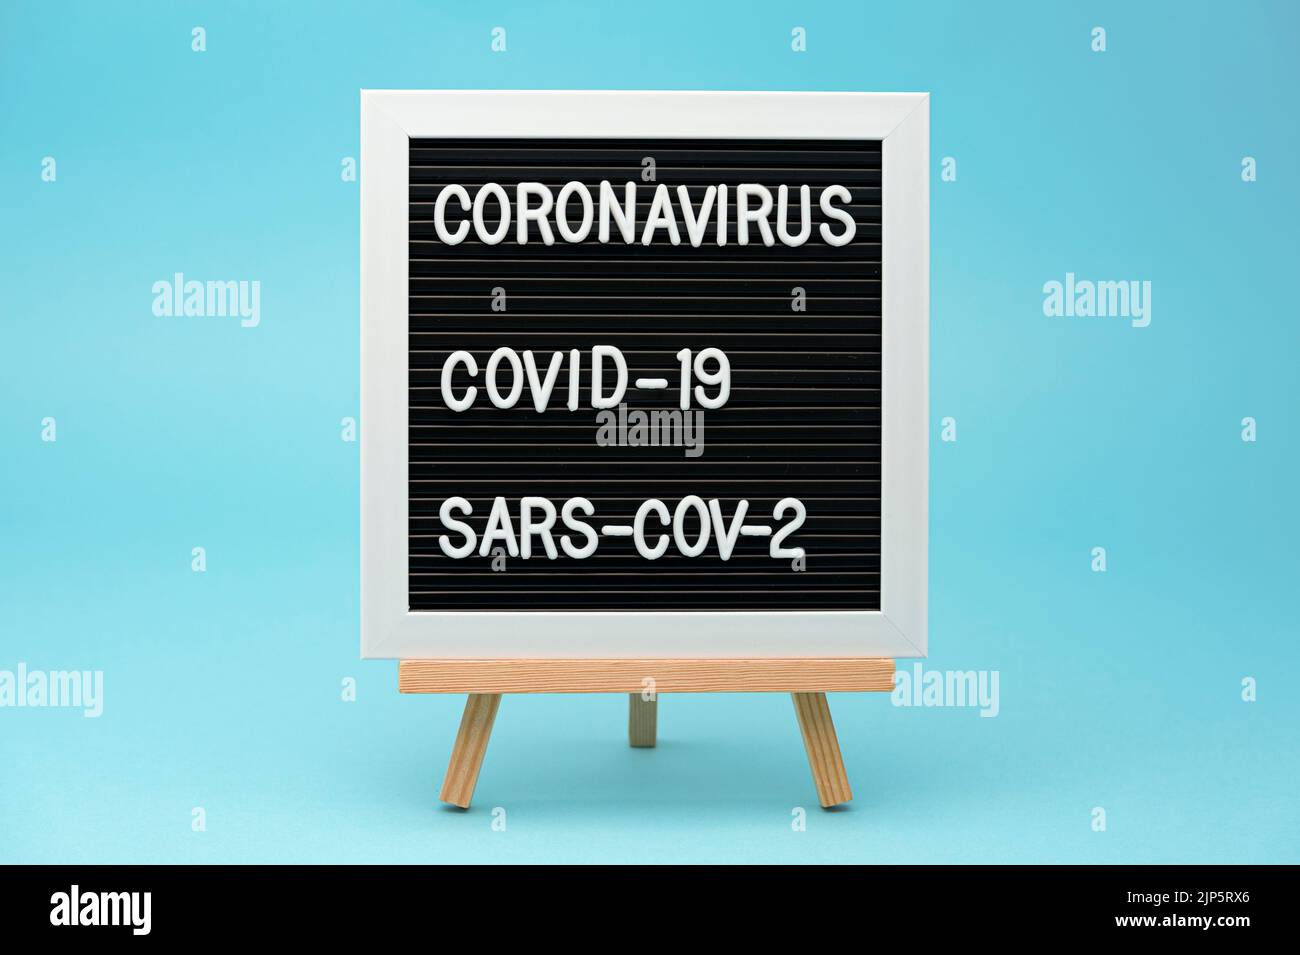 Tableau d'écriture : CORONAVIRUS, COVID-19 et SRAS-COV-2. Isolé sur fond bleu. Gros plan. Tir horizontal. Banque D'Images